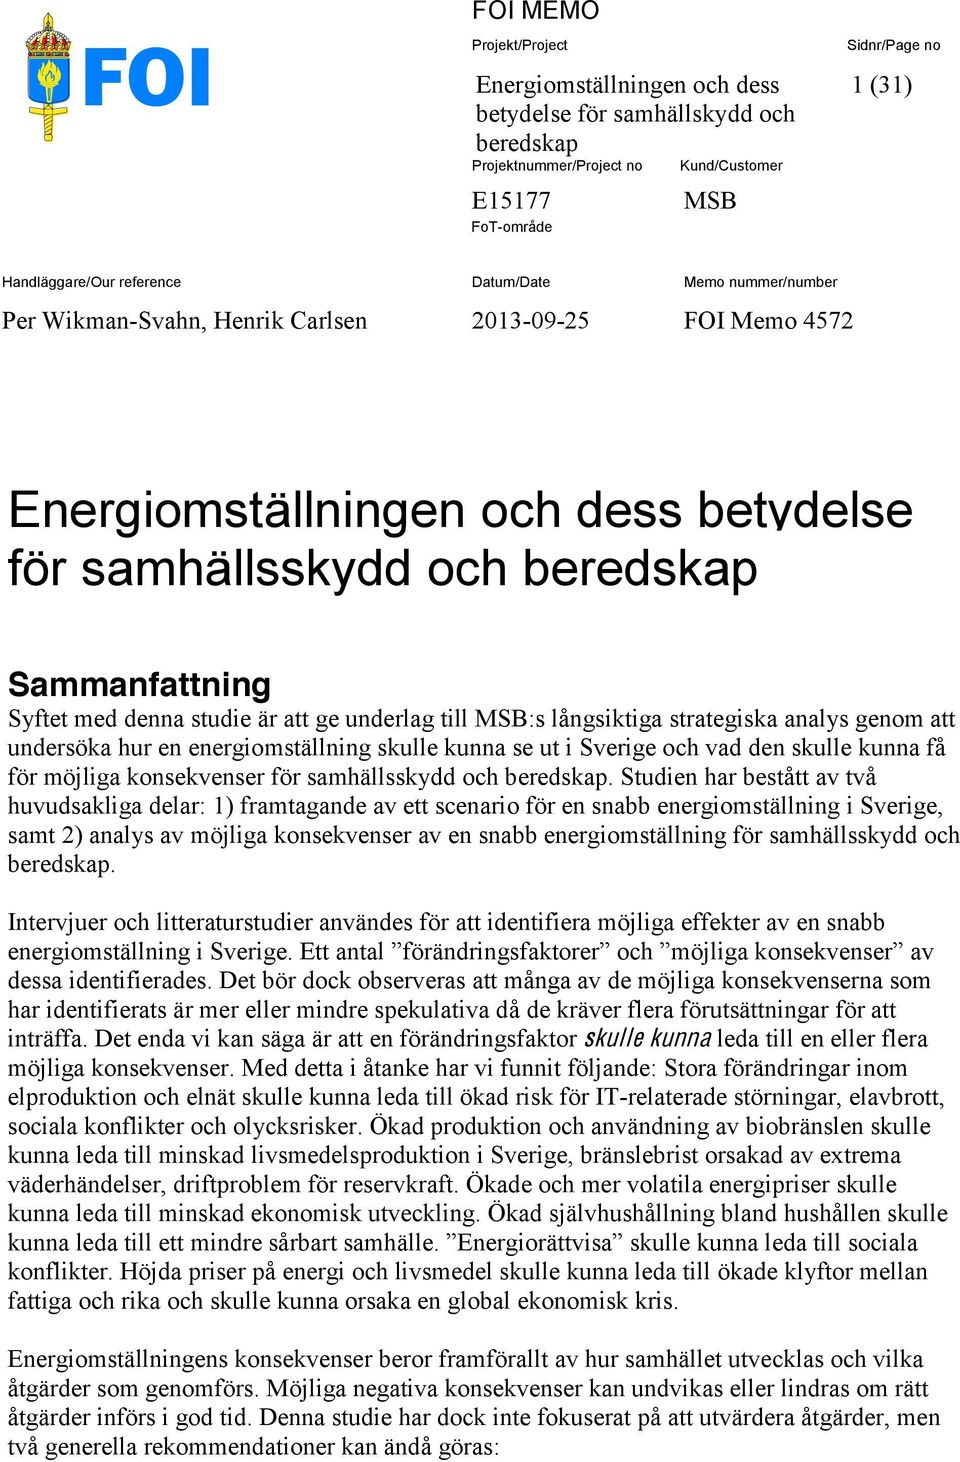 till MSB:s långsiktiga strategiska analys genom att undersöka hur en energiomställning skulle kunna se ut i Sverige och vad den skulle kunna få för möjliga konsekvenser för samhällsskydd och